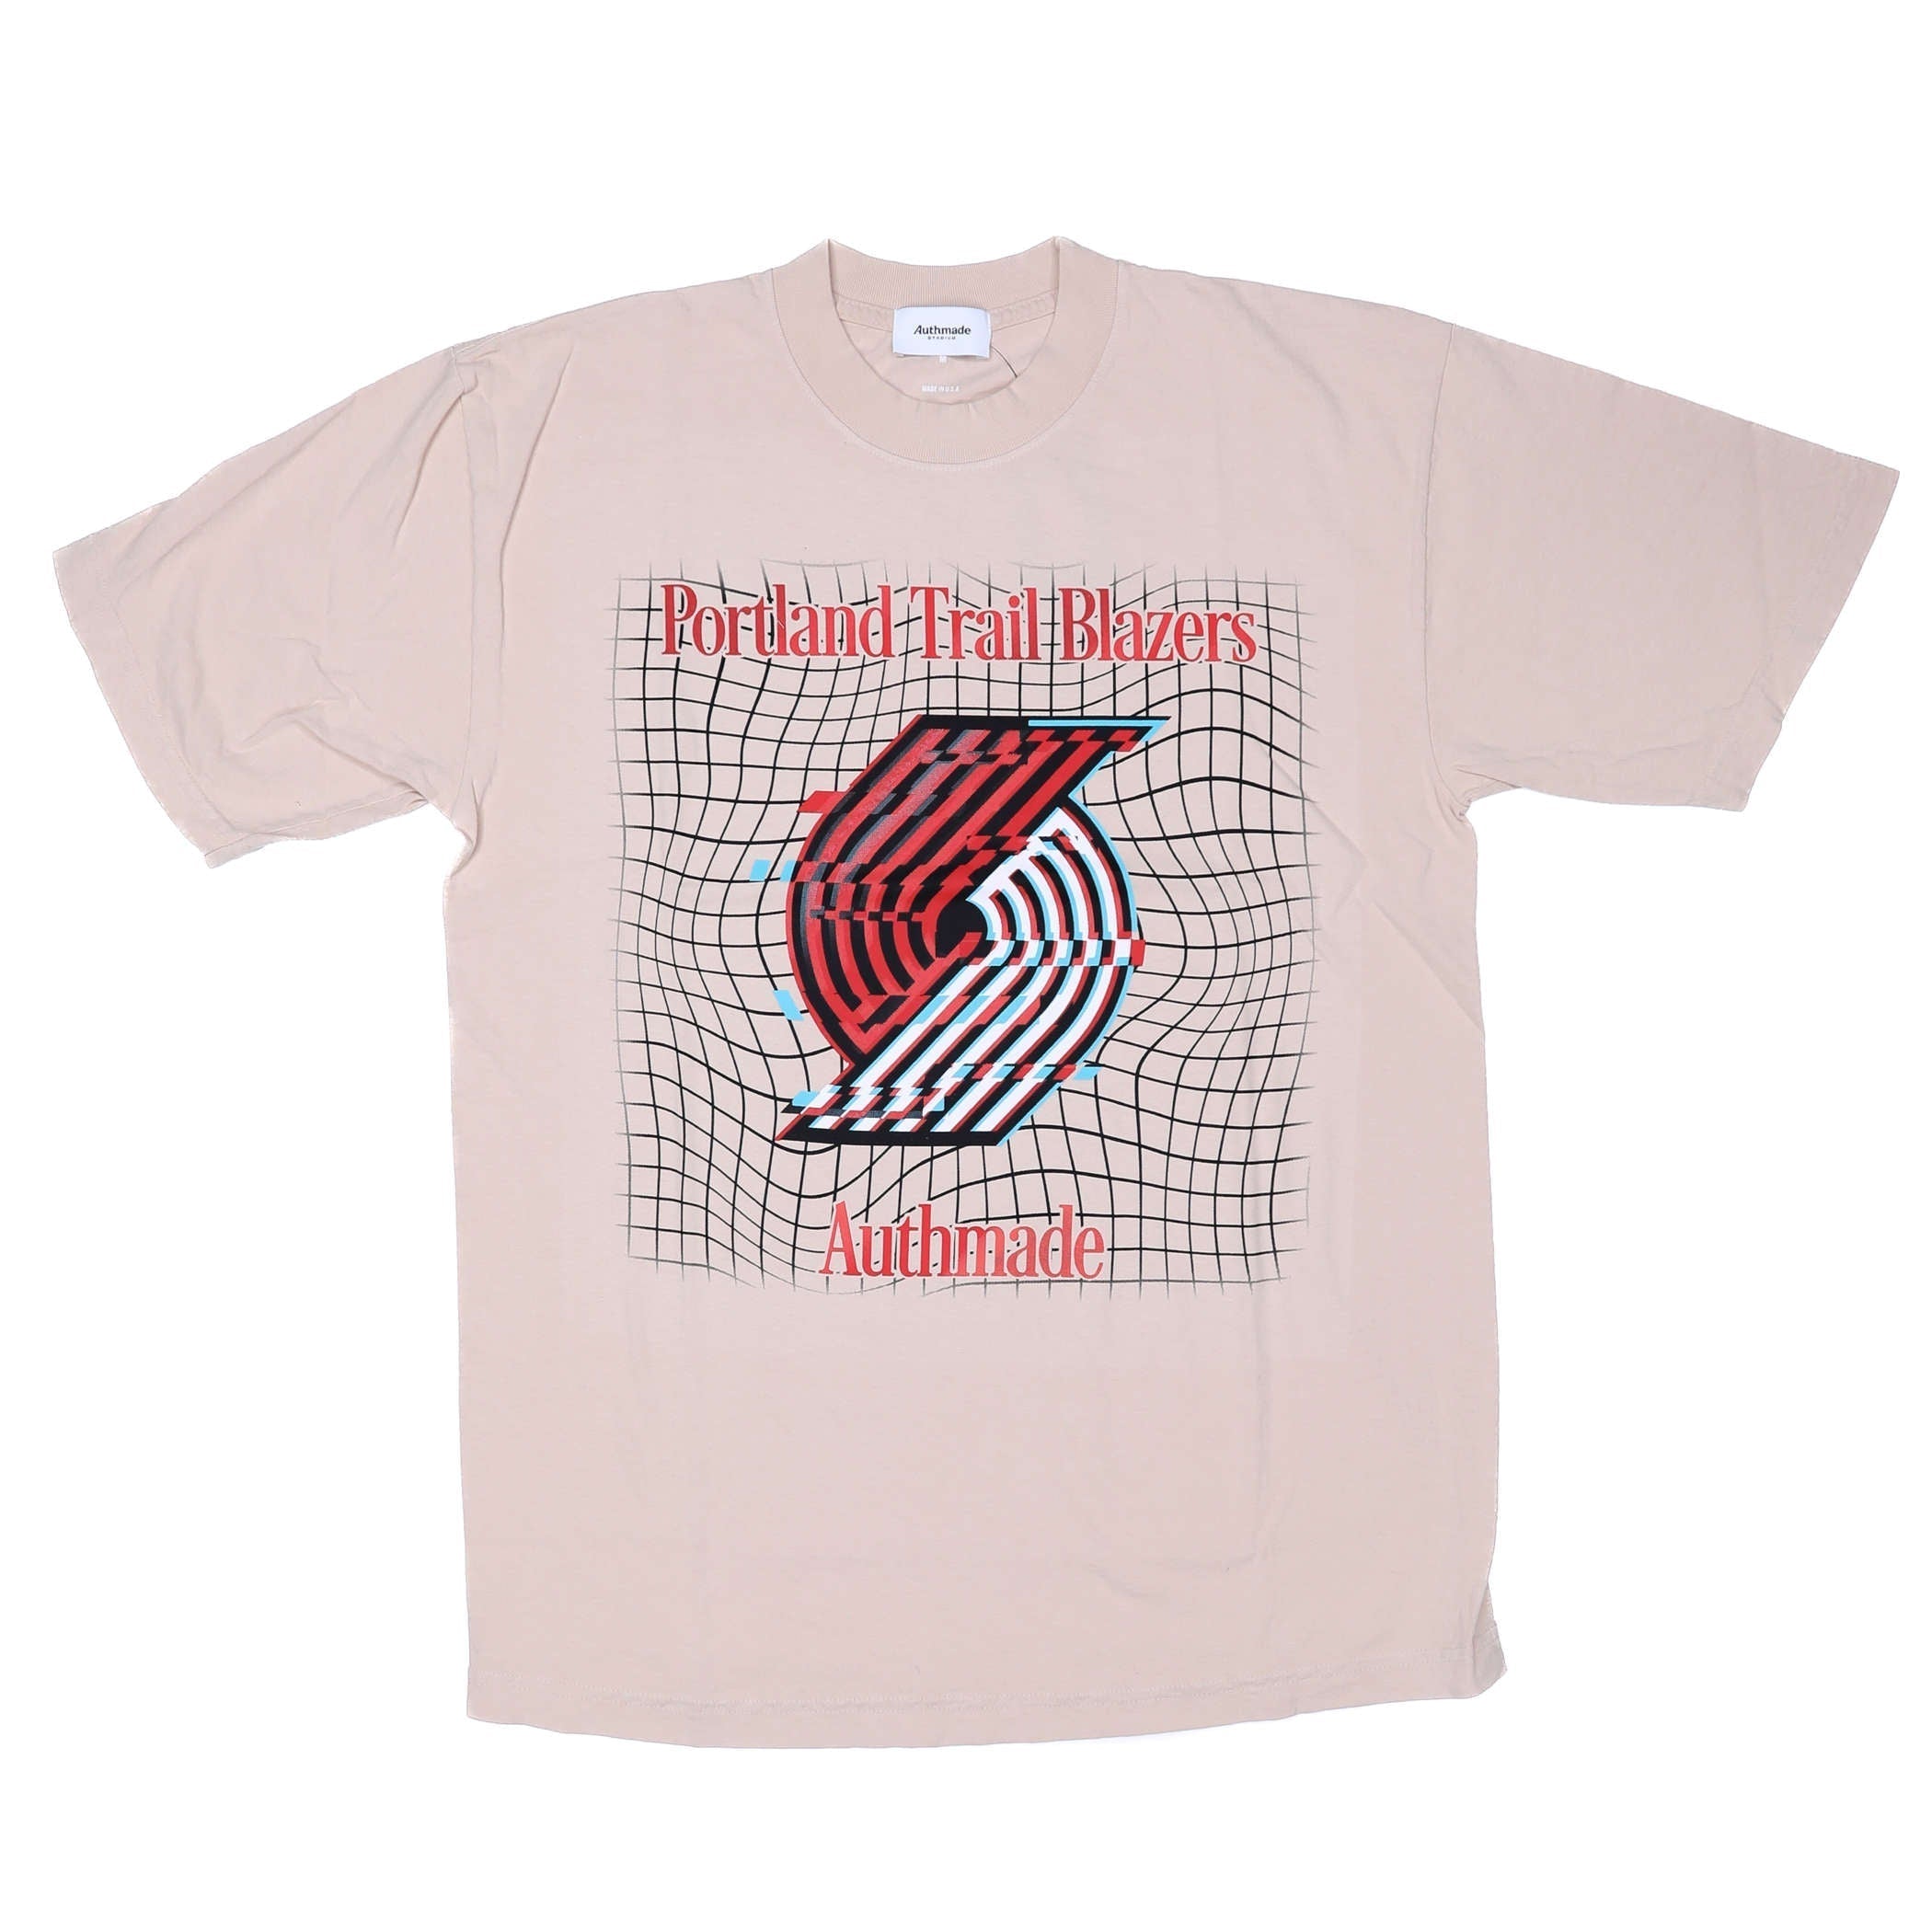 Authmade Warp Glitch Grid T - shirt - S - 